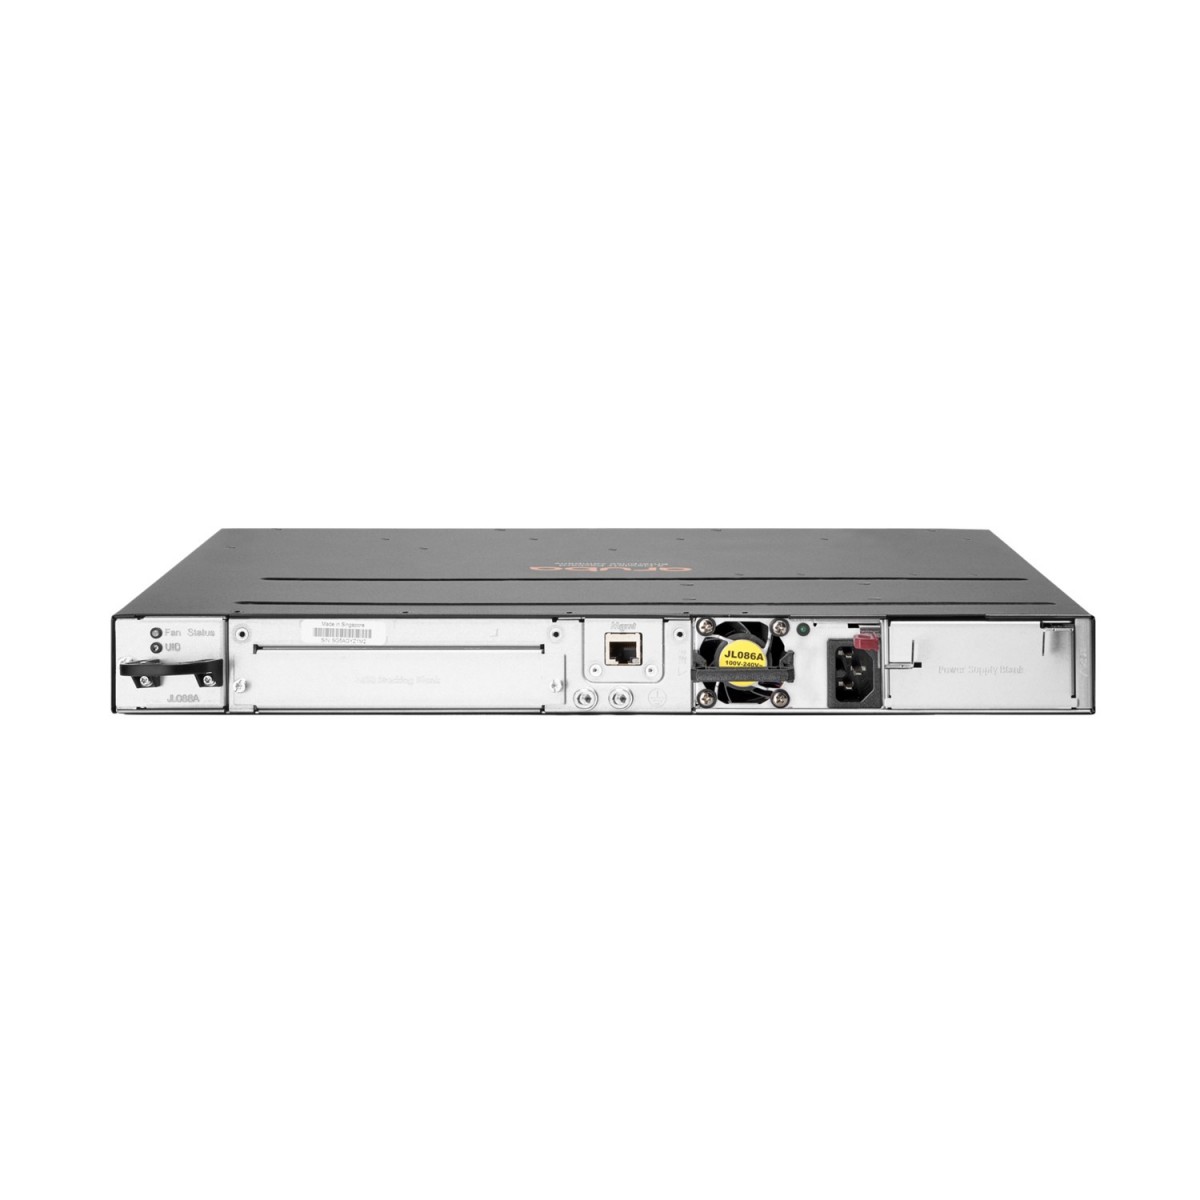 HPE 3810M 48G PoE+ 4SFP+ 680W - Managed - L3 - Gigabit Ethernet (10/100/1000) - Power over Ethernet (PoE) - Rack mounting - 1U